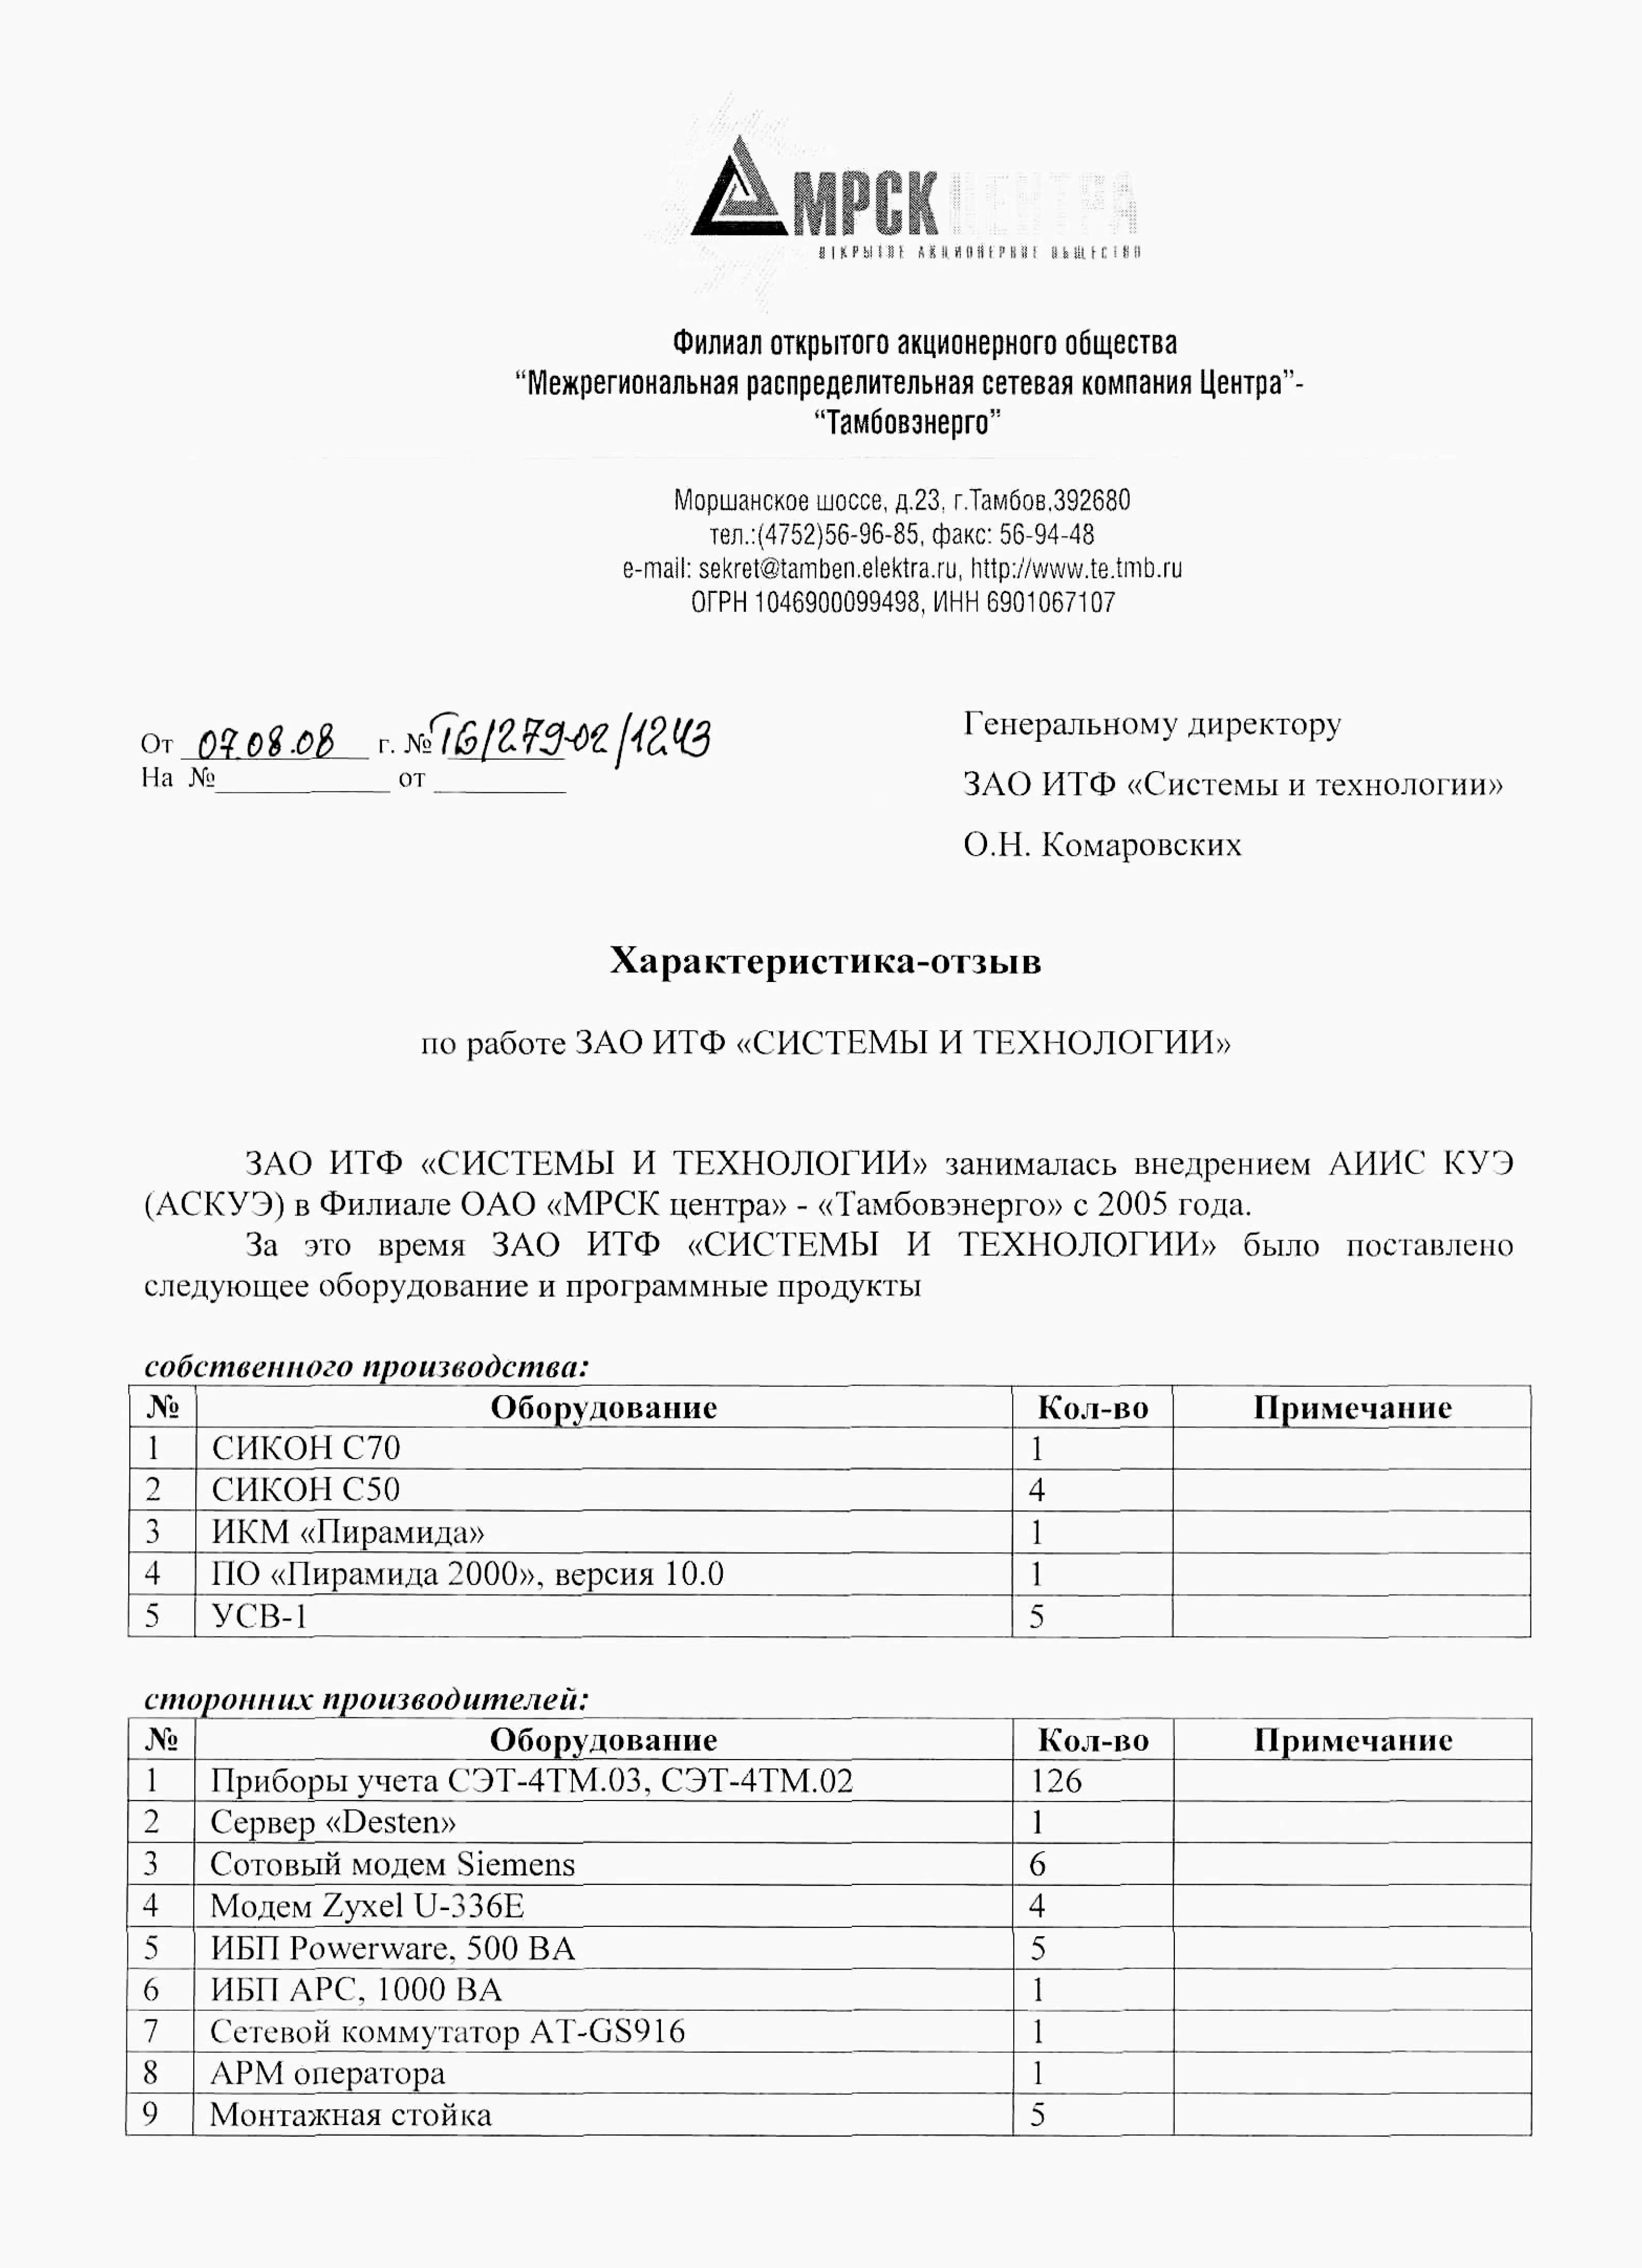 ОАО «МРСК Центра» - «Тамбовэнерго»